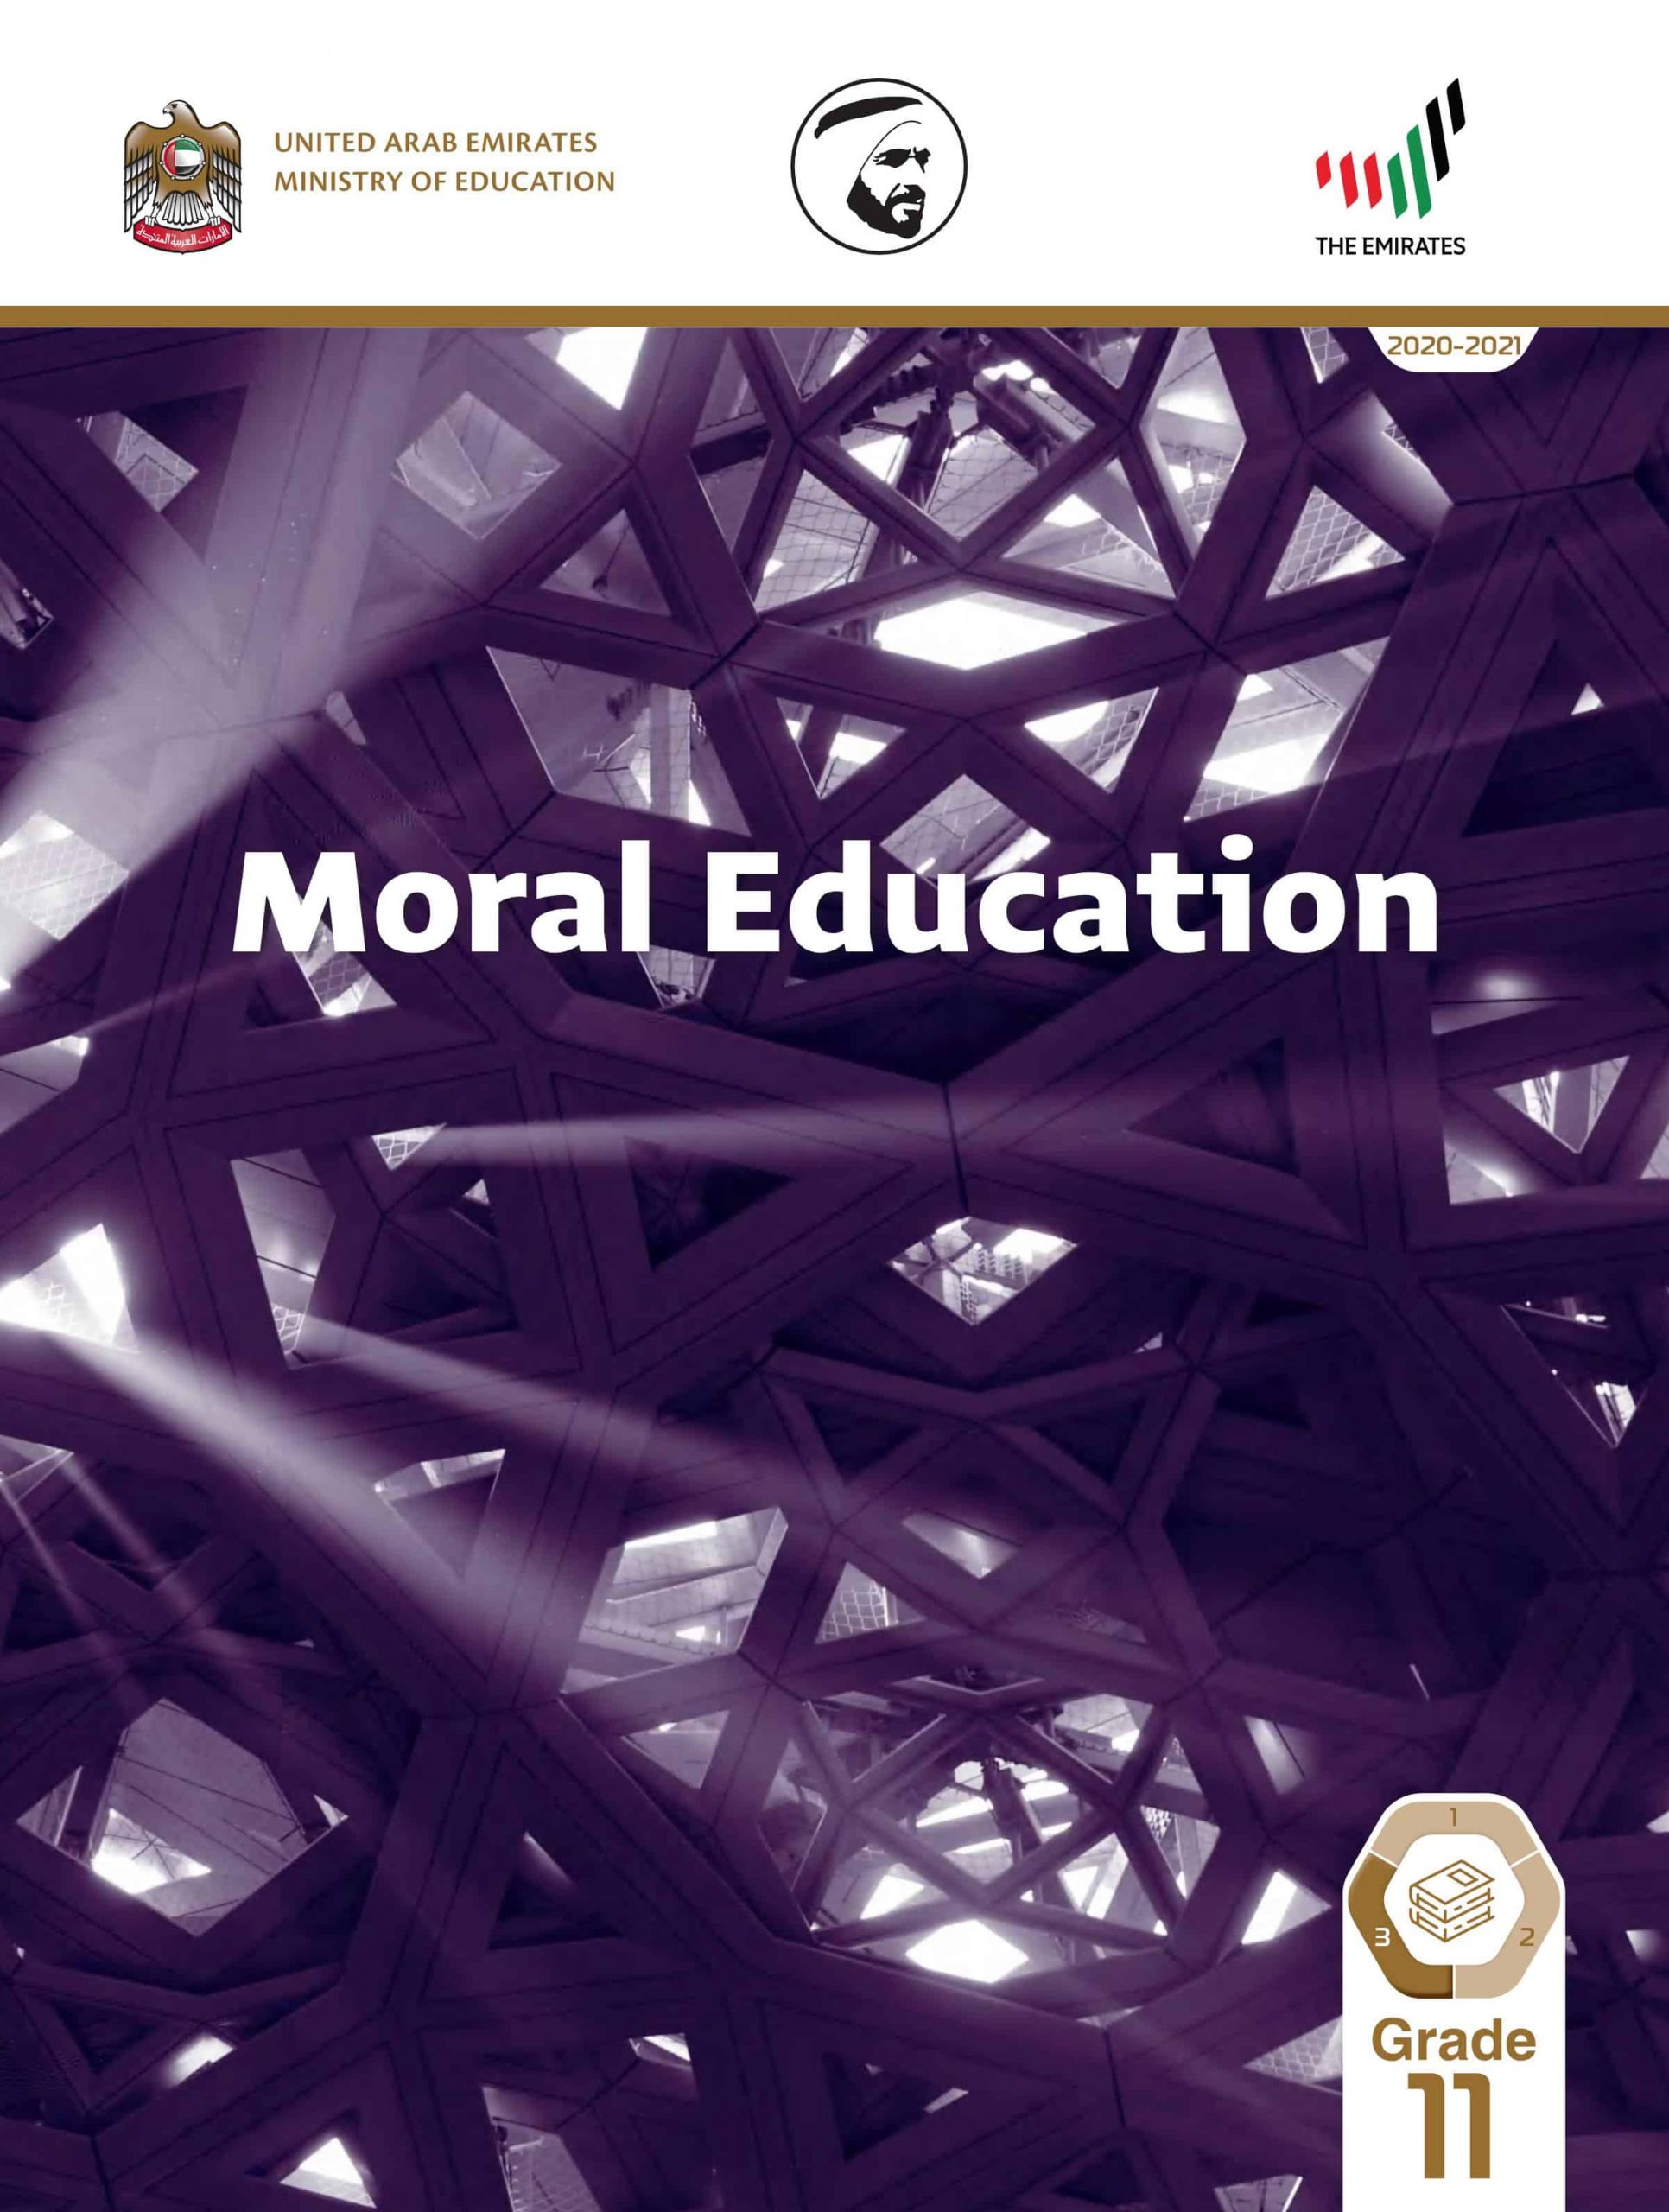 كتاب الطالب بالإنجليزي الفصل الدراسي الثالث 2020-2021 الصف الحادي عشر مادة التربية الأخلاقية